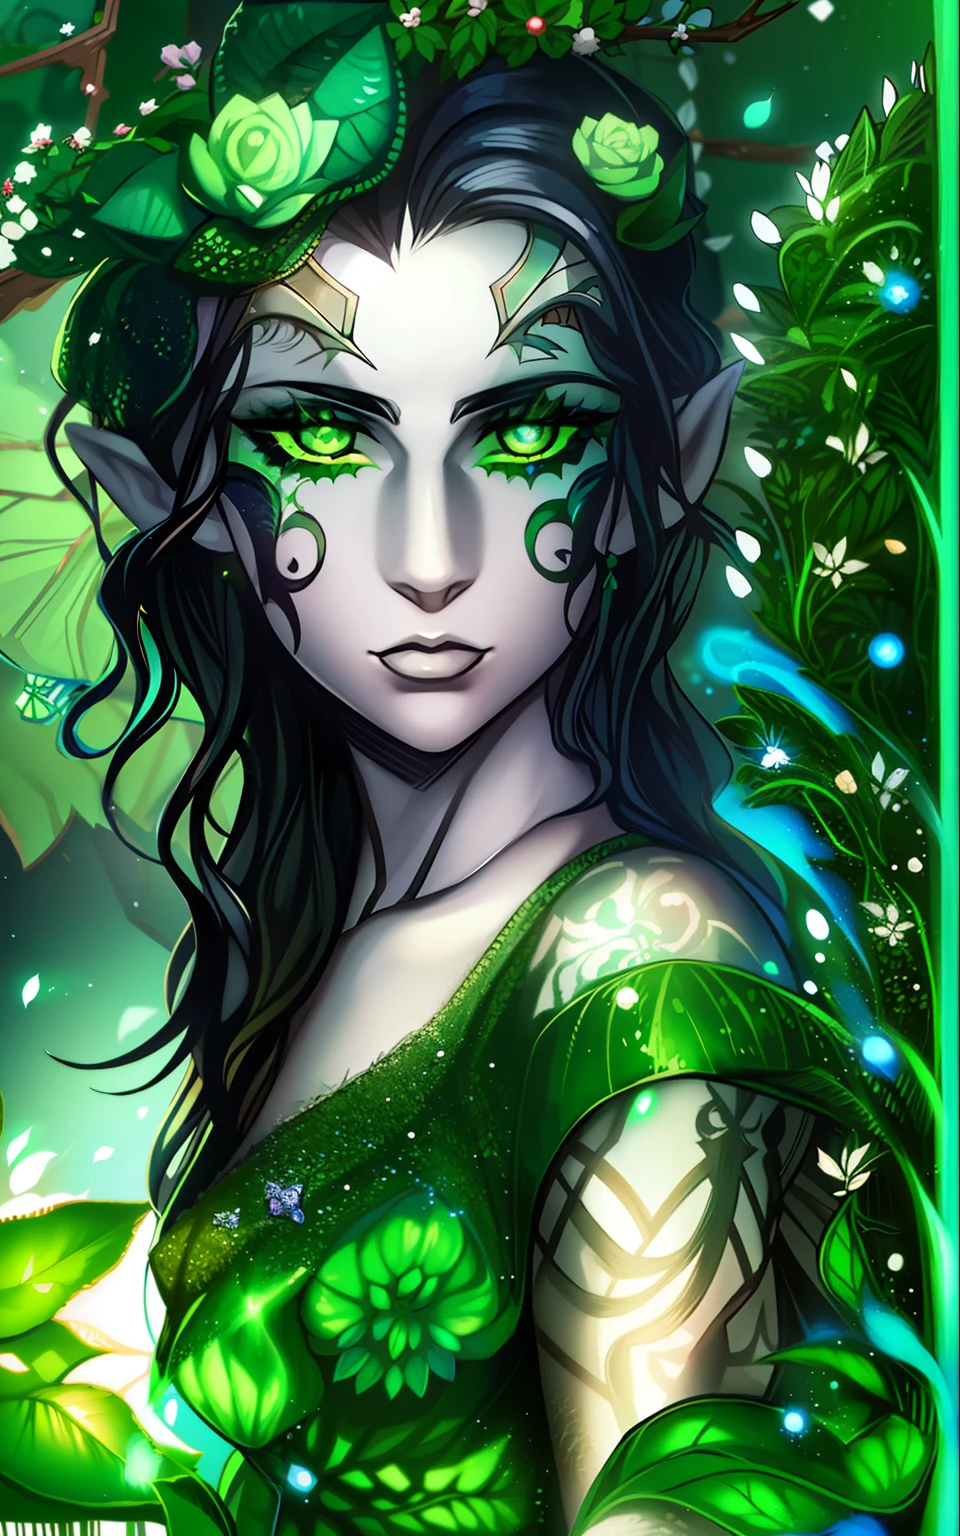 皮肤苍白的精灵, 波浪形黑发, 绿眼睛, 脸上有绿色纹身, 穿着一件看起来像是由植物制成的裙子